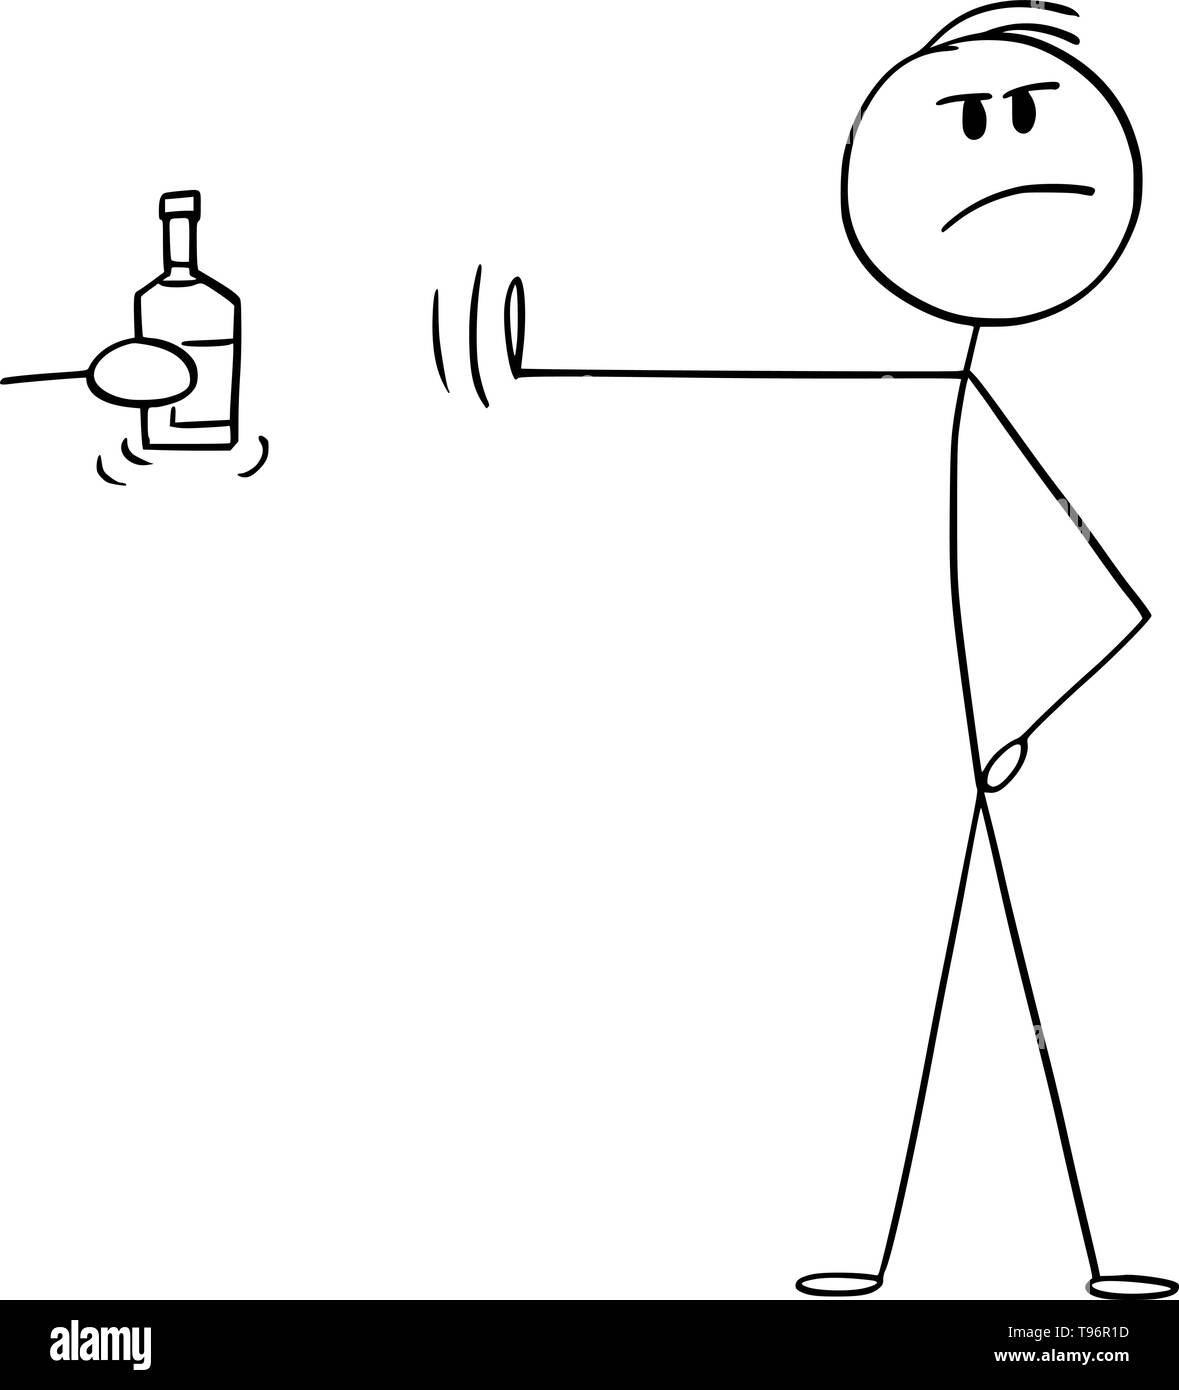 Vector cartoon stick figura disegno illustrazione concettuale di principled o alta principled uomo respingendo una bottiglia di alcool o liquore duro con la mano il gesto e posa. Illustrazione Vettoriale